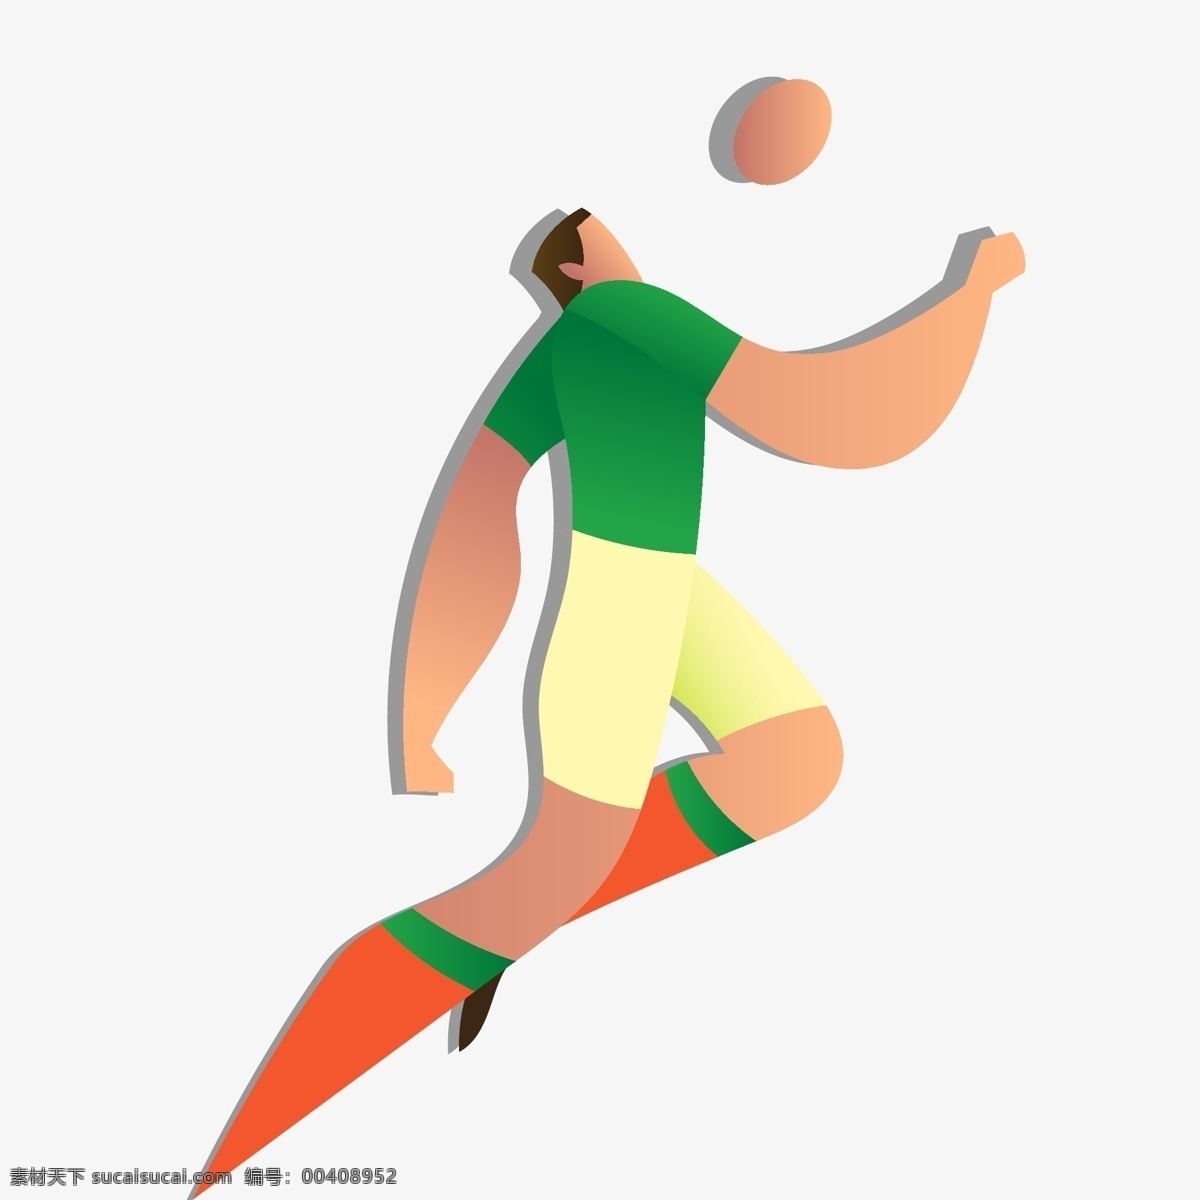 俄罗斯 世界杯 绿色 卡通 运球 人物 矢量 图案 2018 足球 欧冠 矢量足球 冠军 教练 球队 足球装饰 装饰图案 矢量装饰 足球风